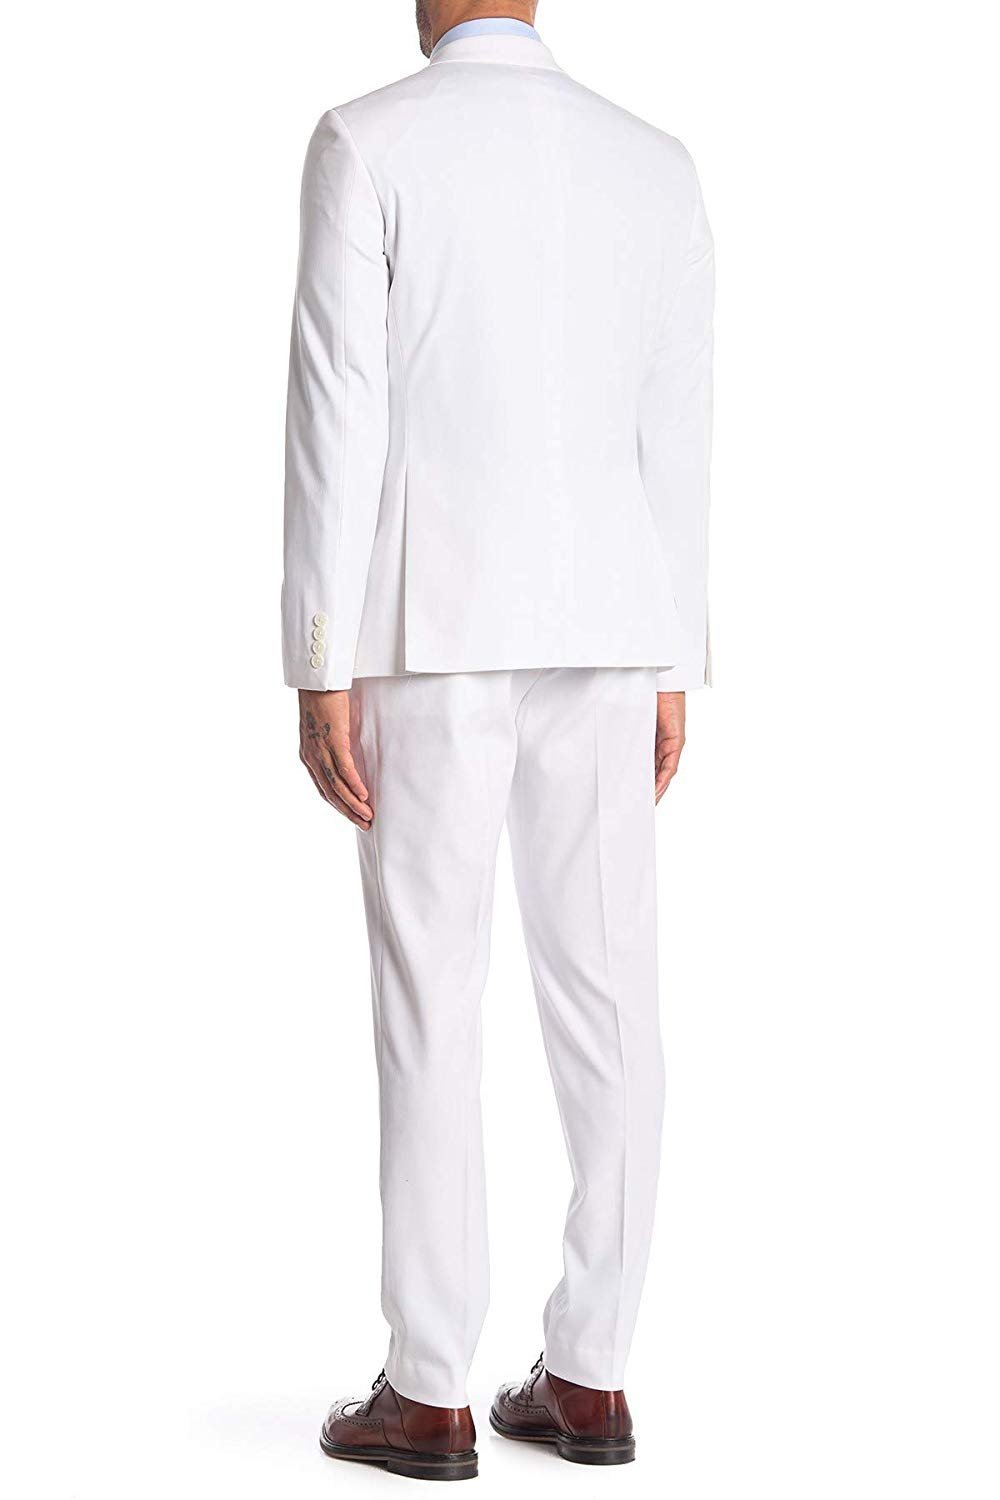 Adam Baker Men's Slim Fit Single Breasted Notch Lapel 2-Piece Suit Set - Colors